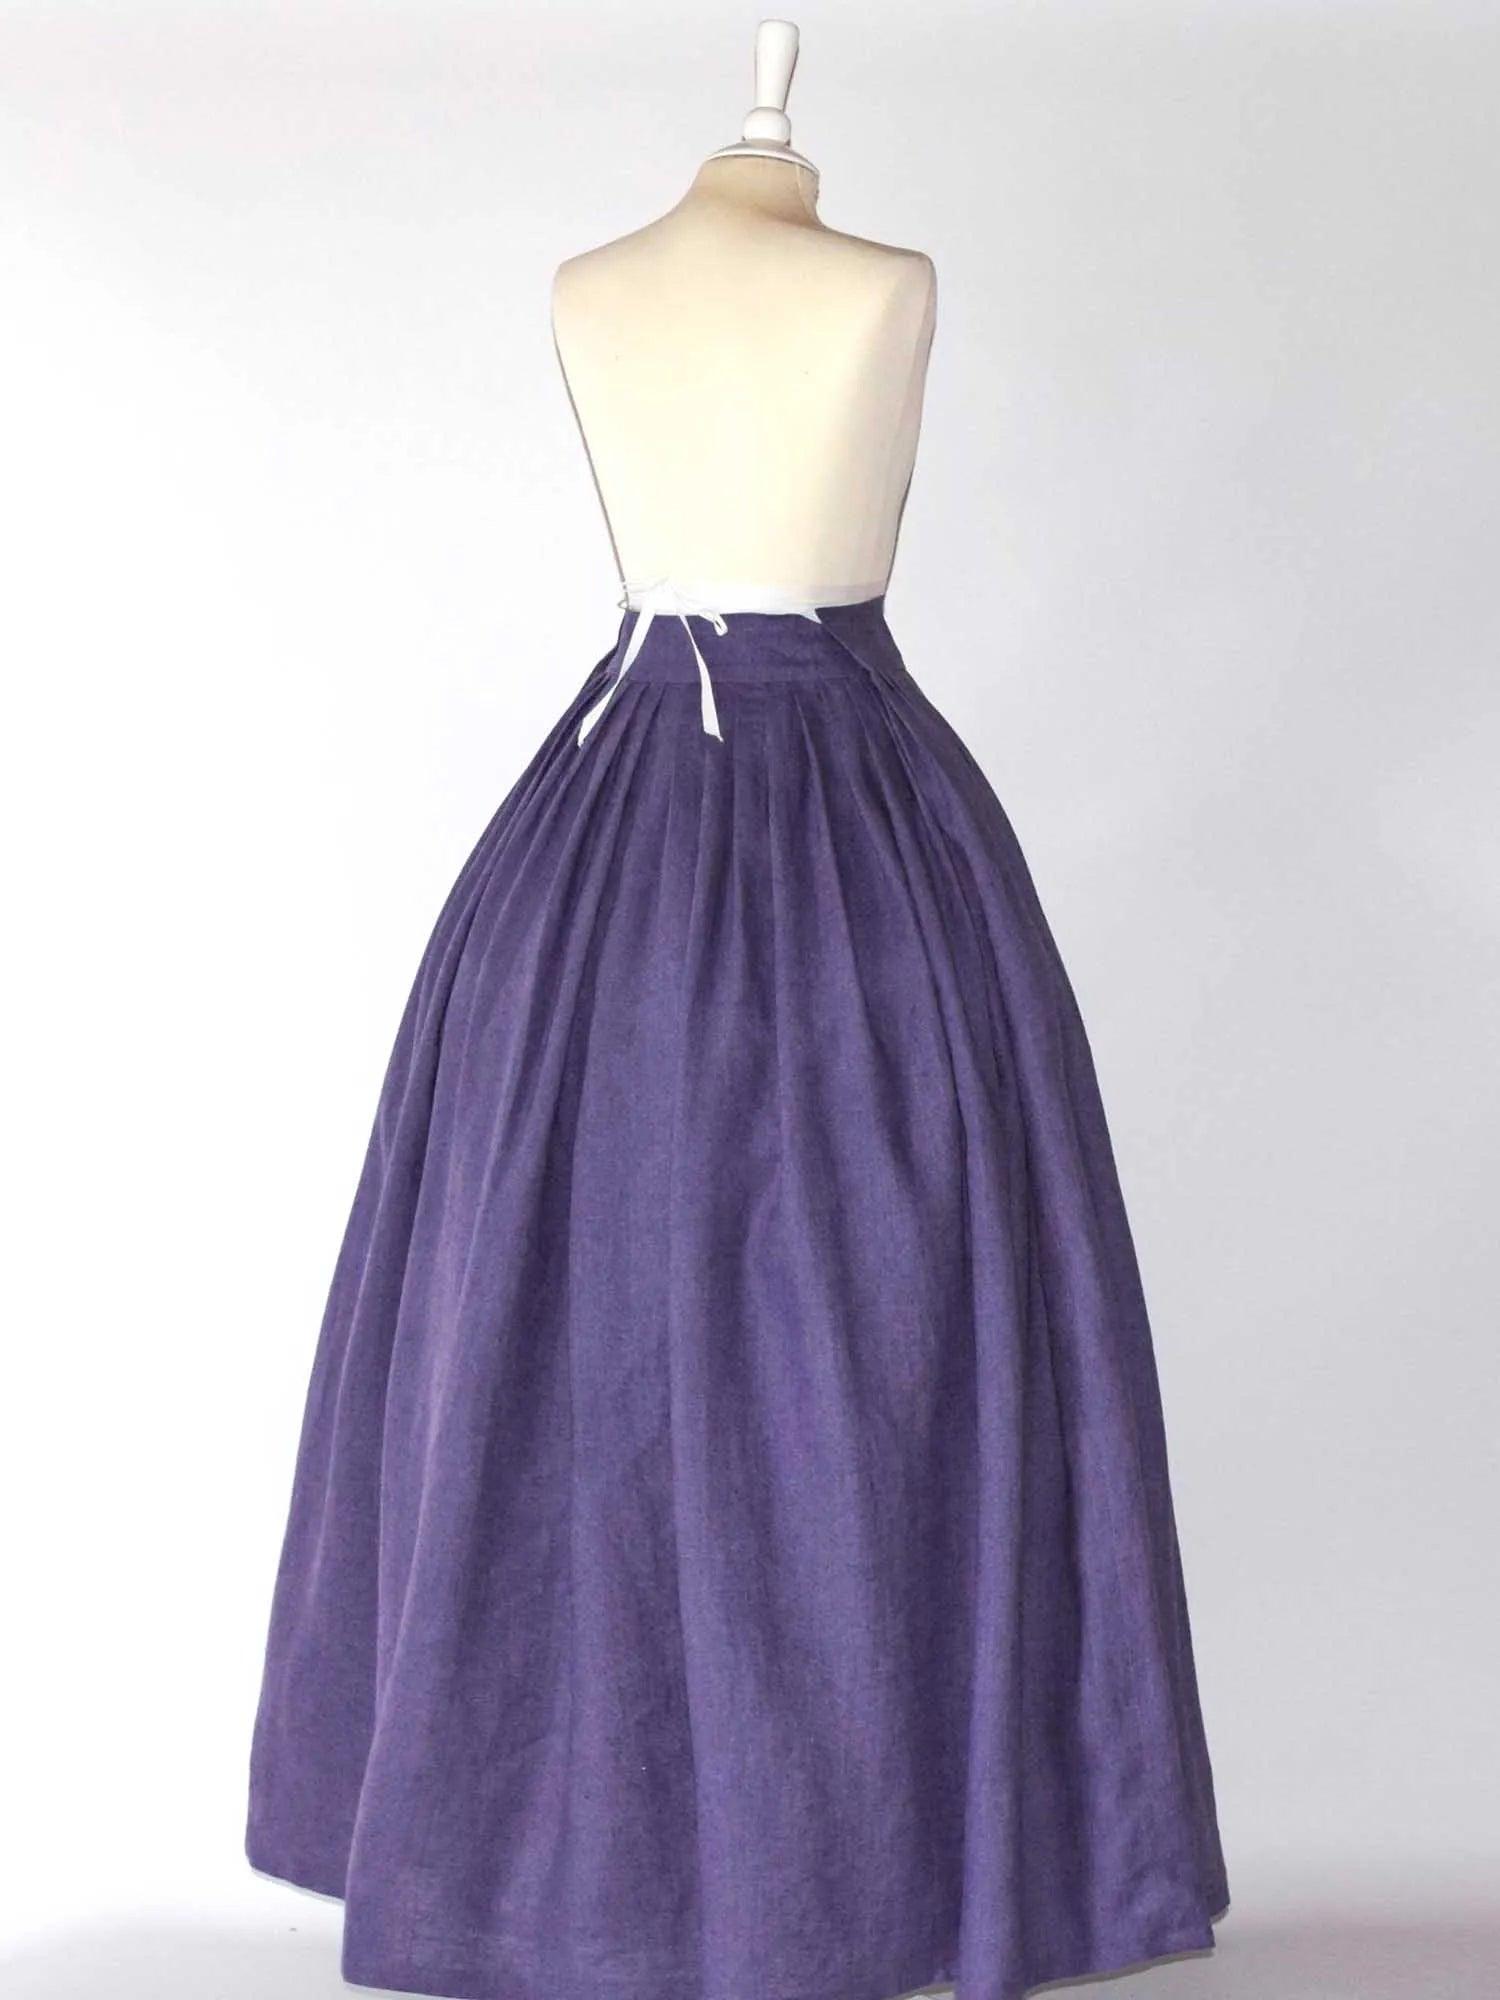 HELOISE, Historical Skirt in Plum Purple Linen - Atelier Serraspina